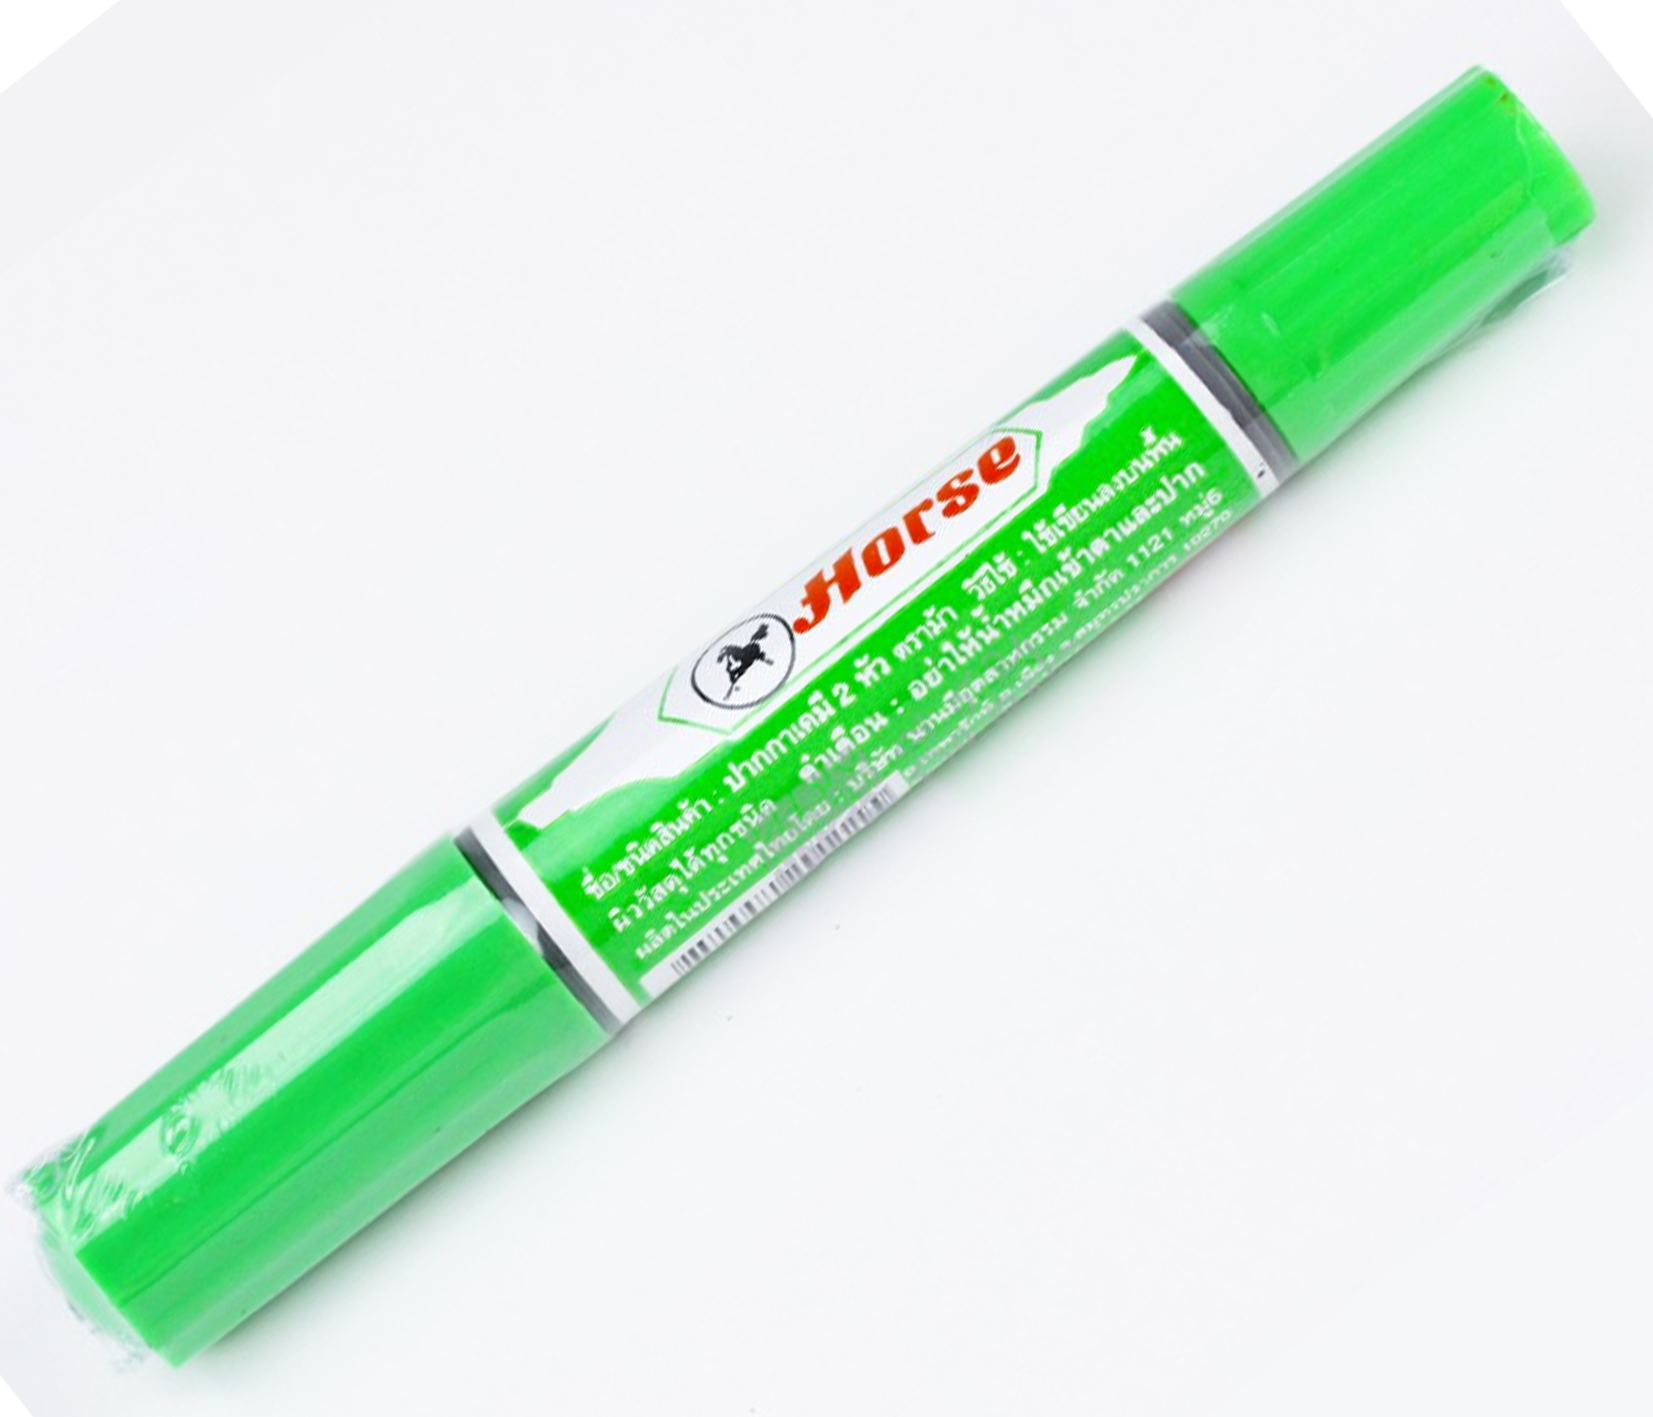 ปากกาเคมี 2หัว ตราม้า สีเขียวอ่อน